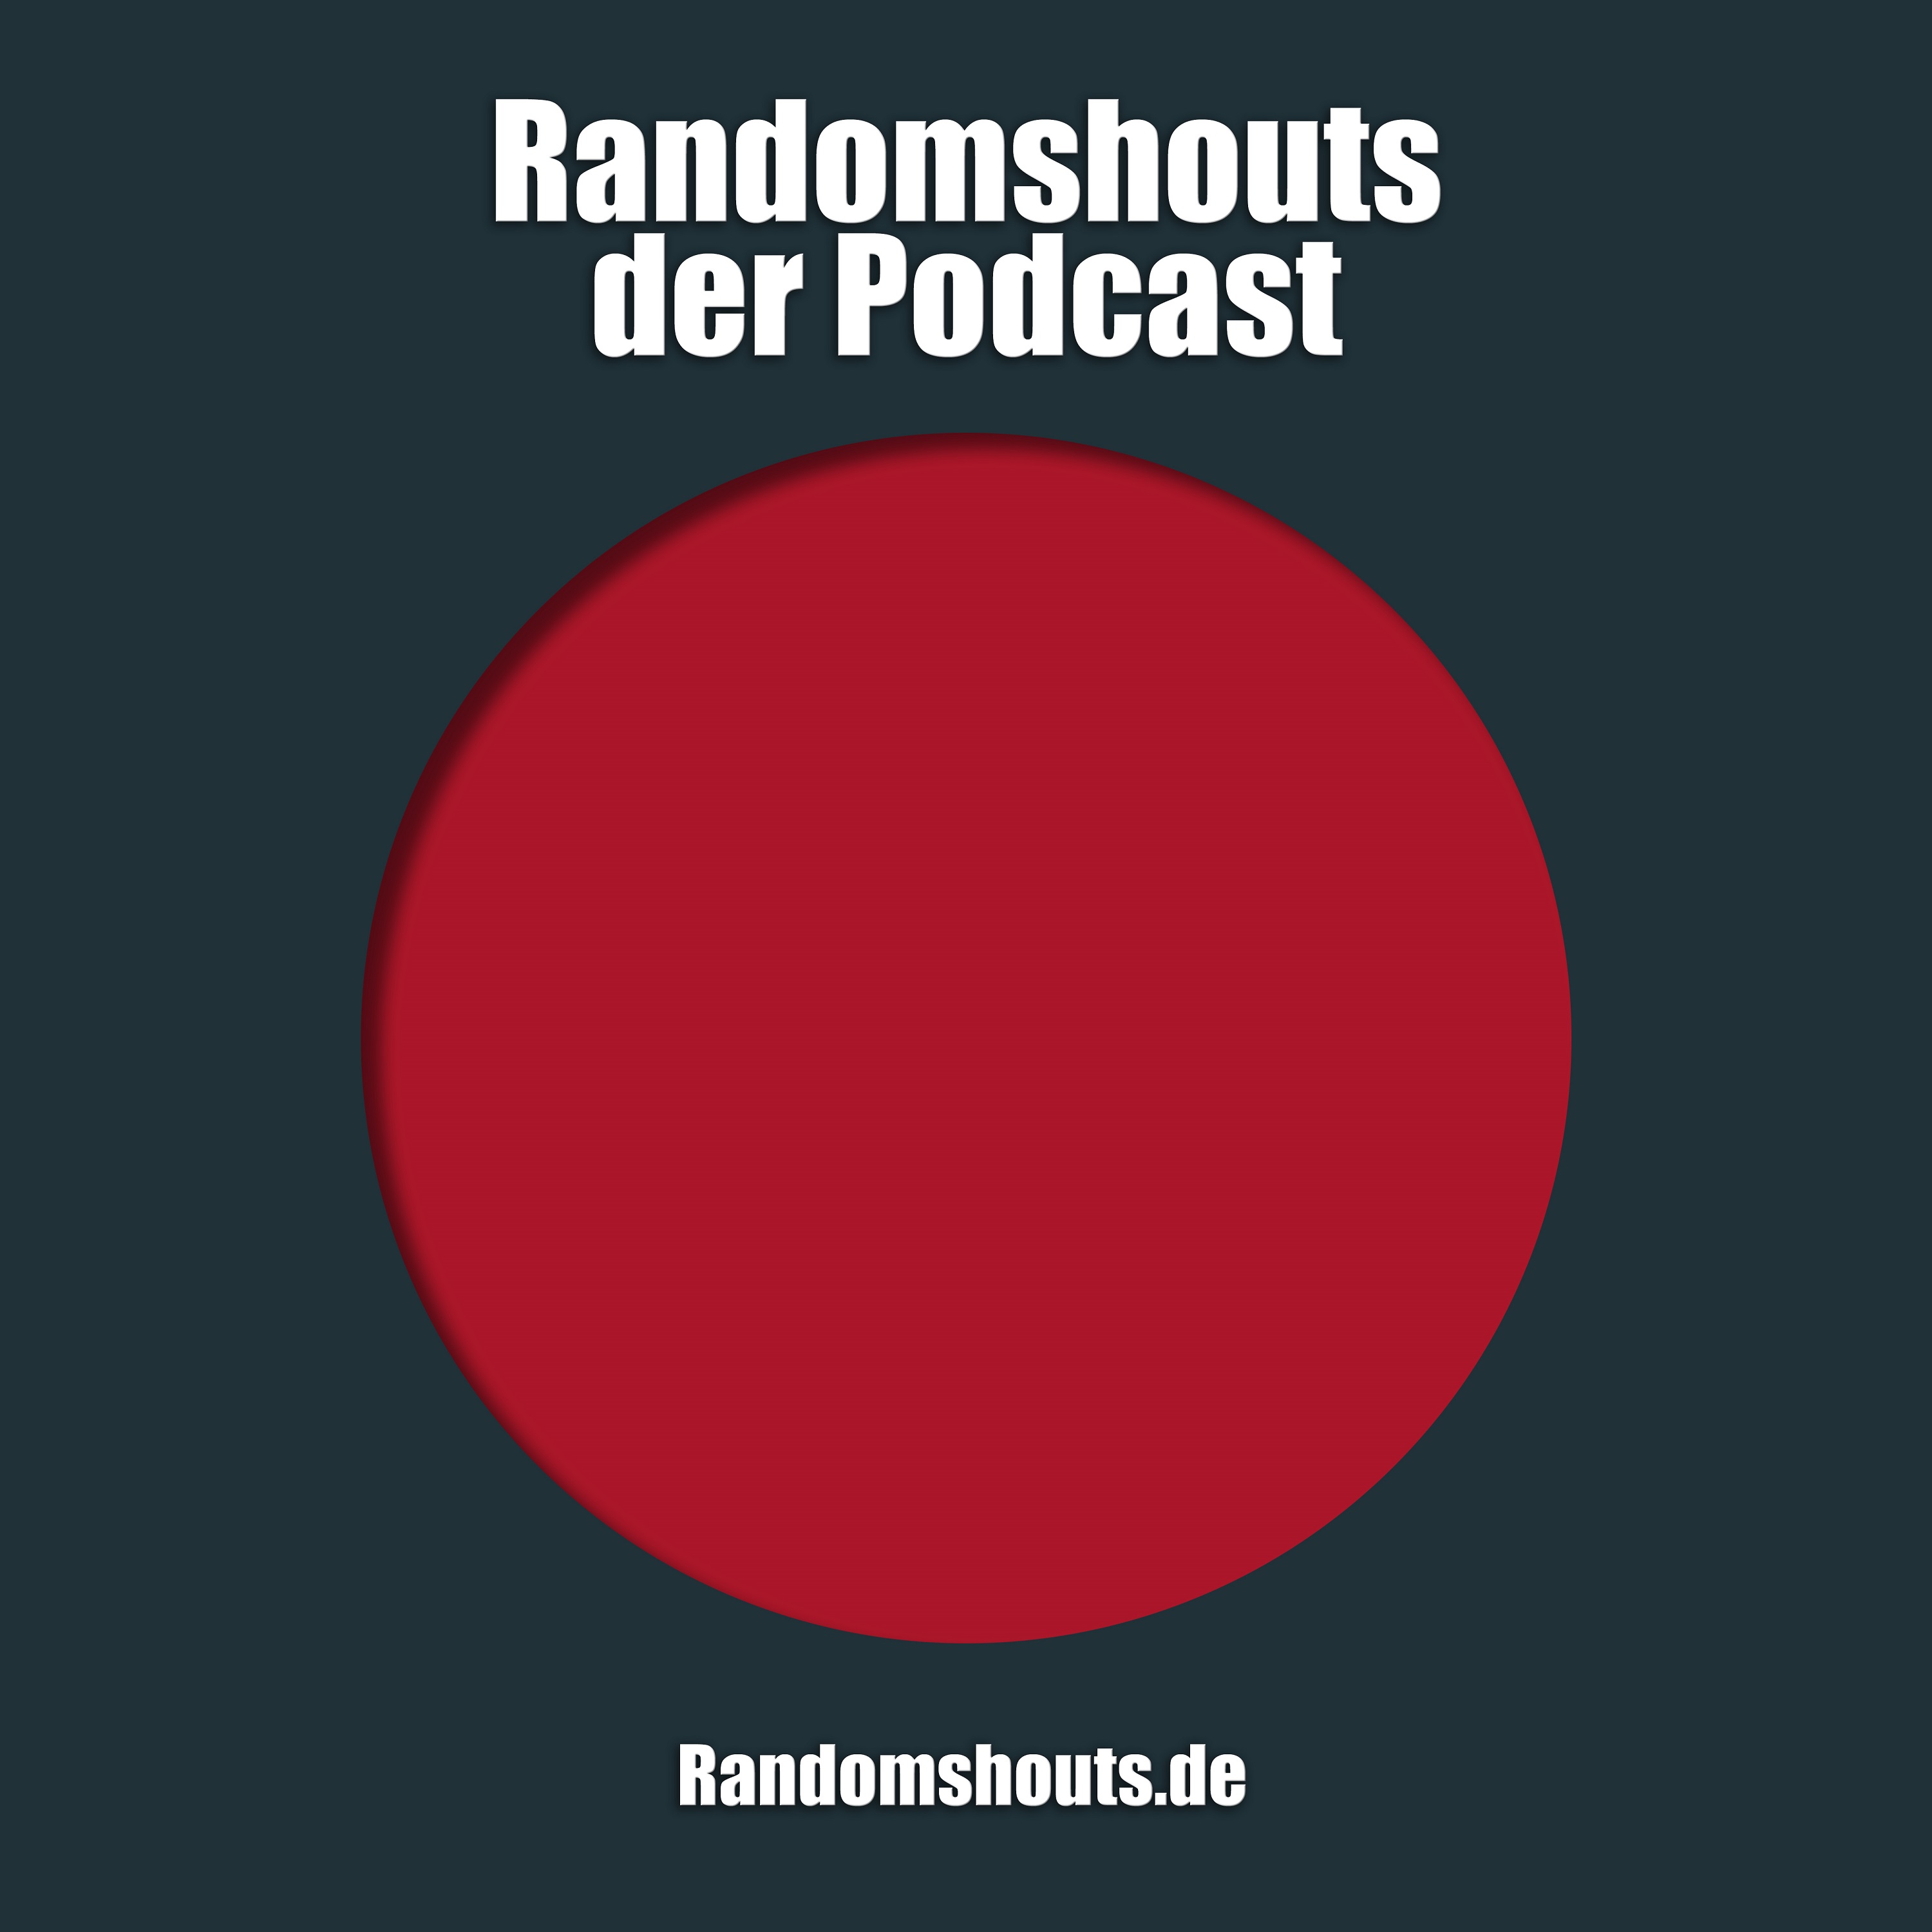 Randomshouts der Podcast - Episode 16: Podcaster allein zu Haus